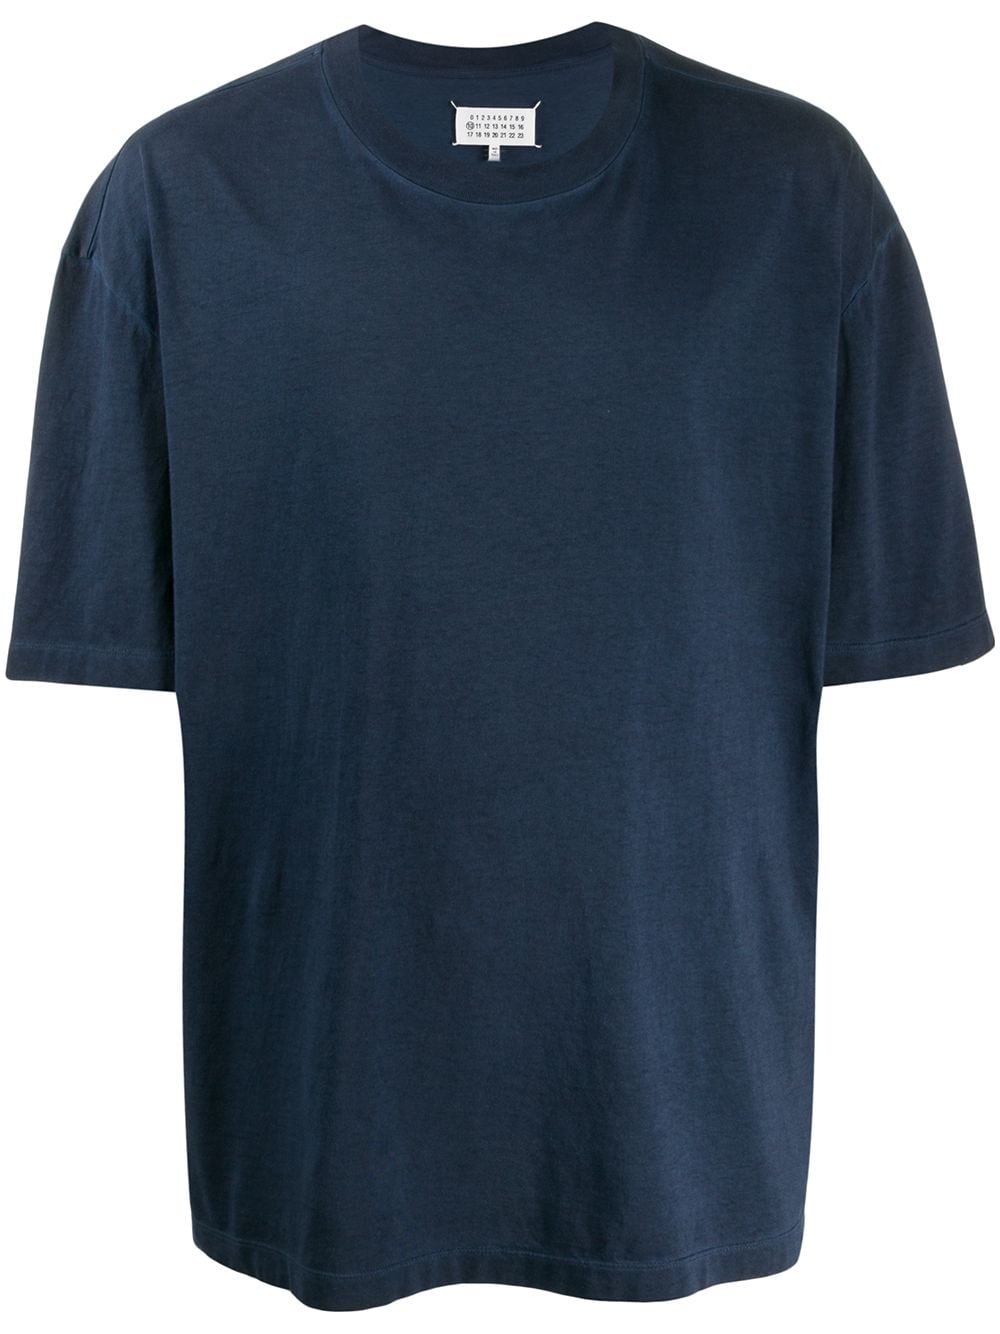 メゾンマルジェラ Tシャツ 無地 美品 10グレーステッチM 定番デザイン [010b025f030504040201000102030a